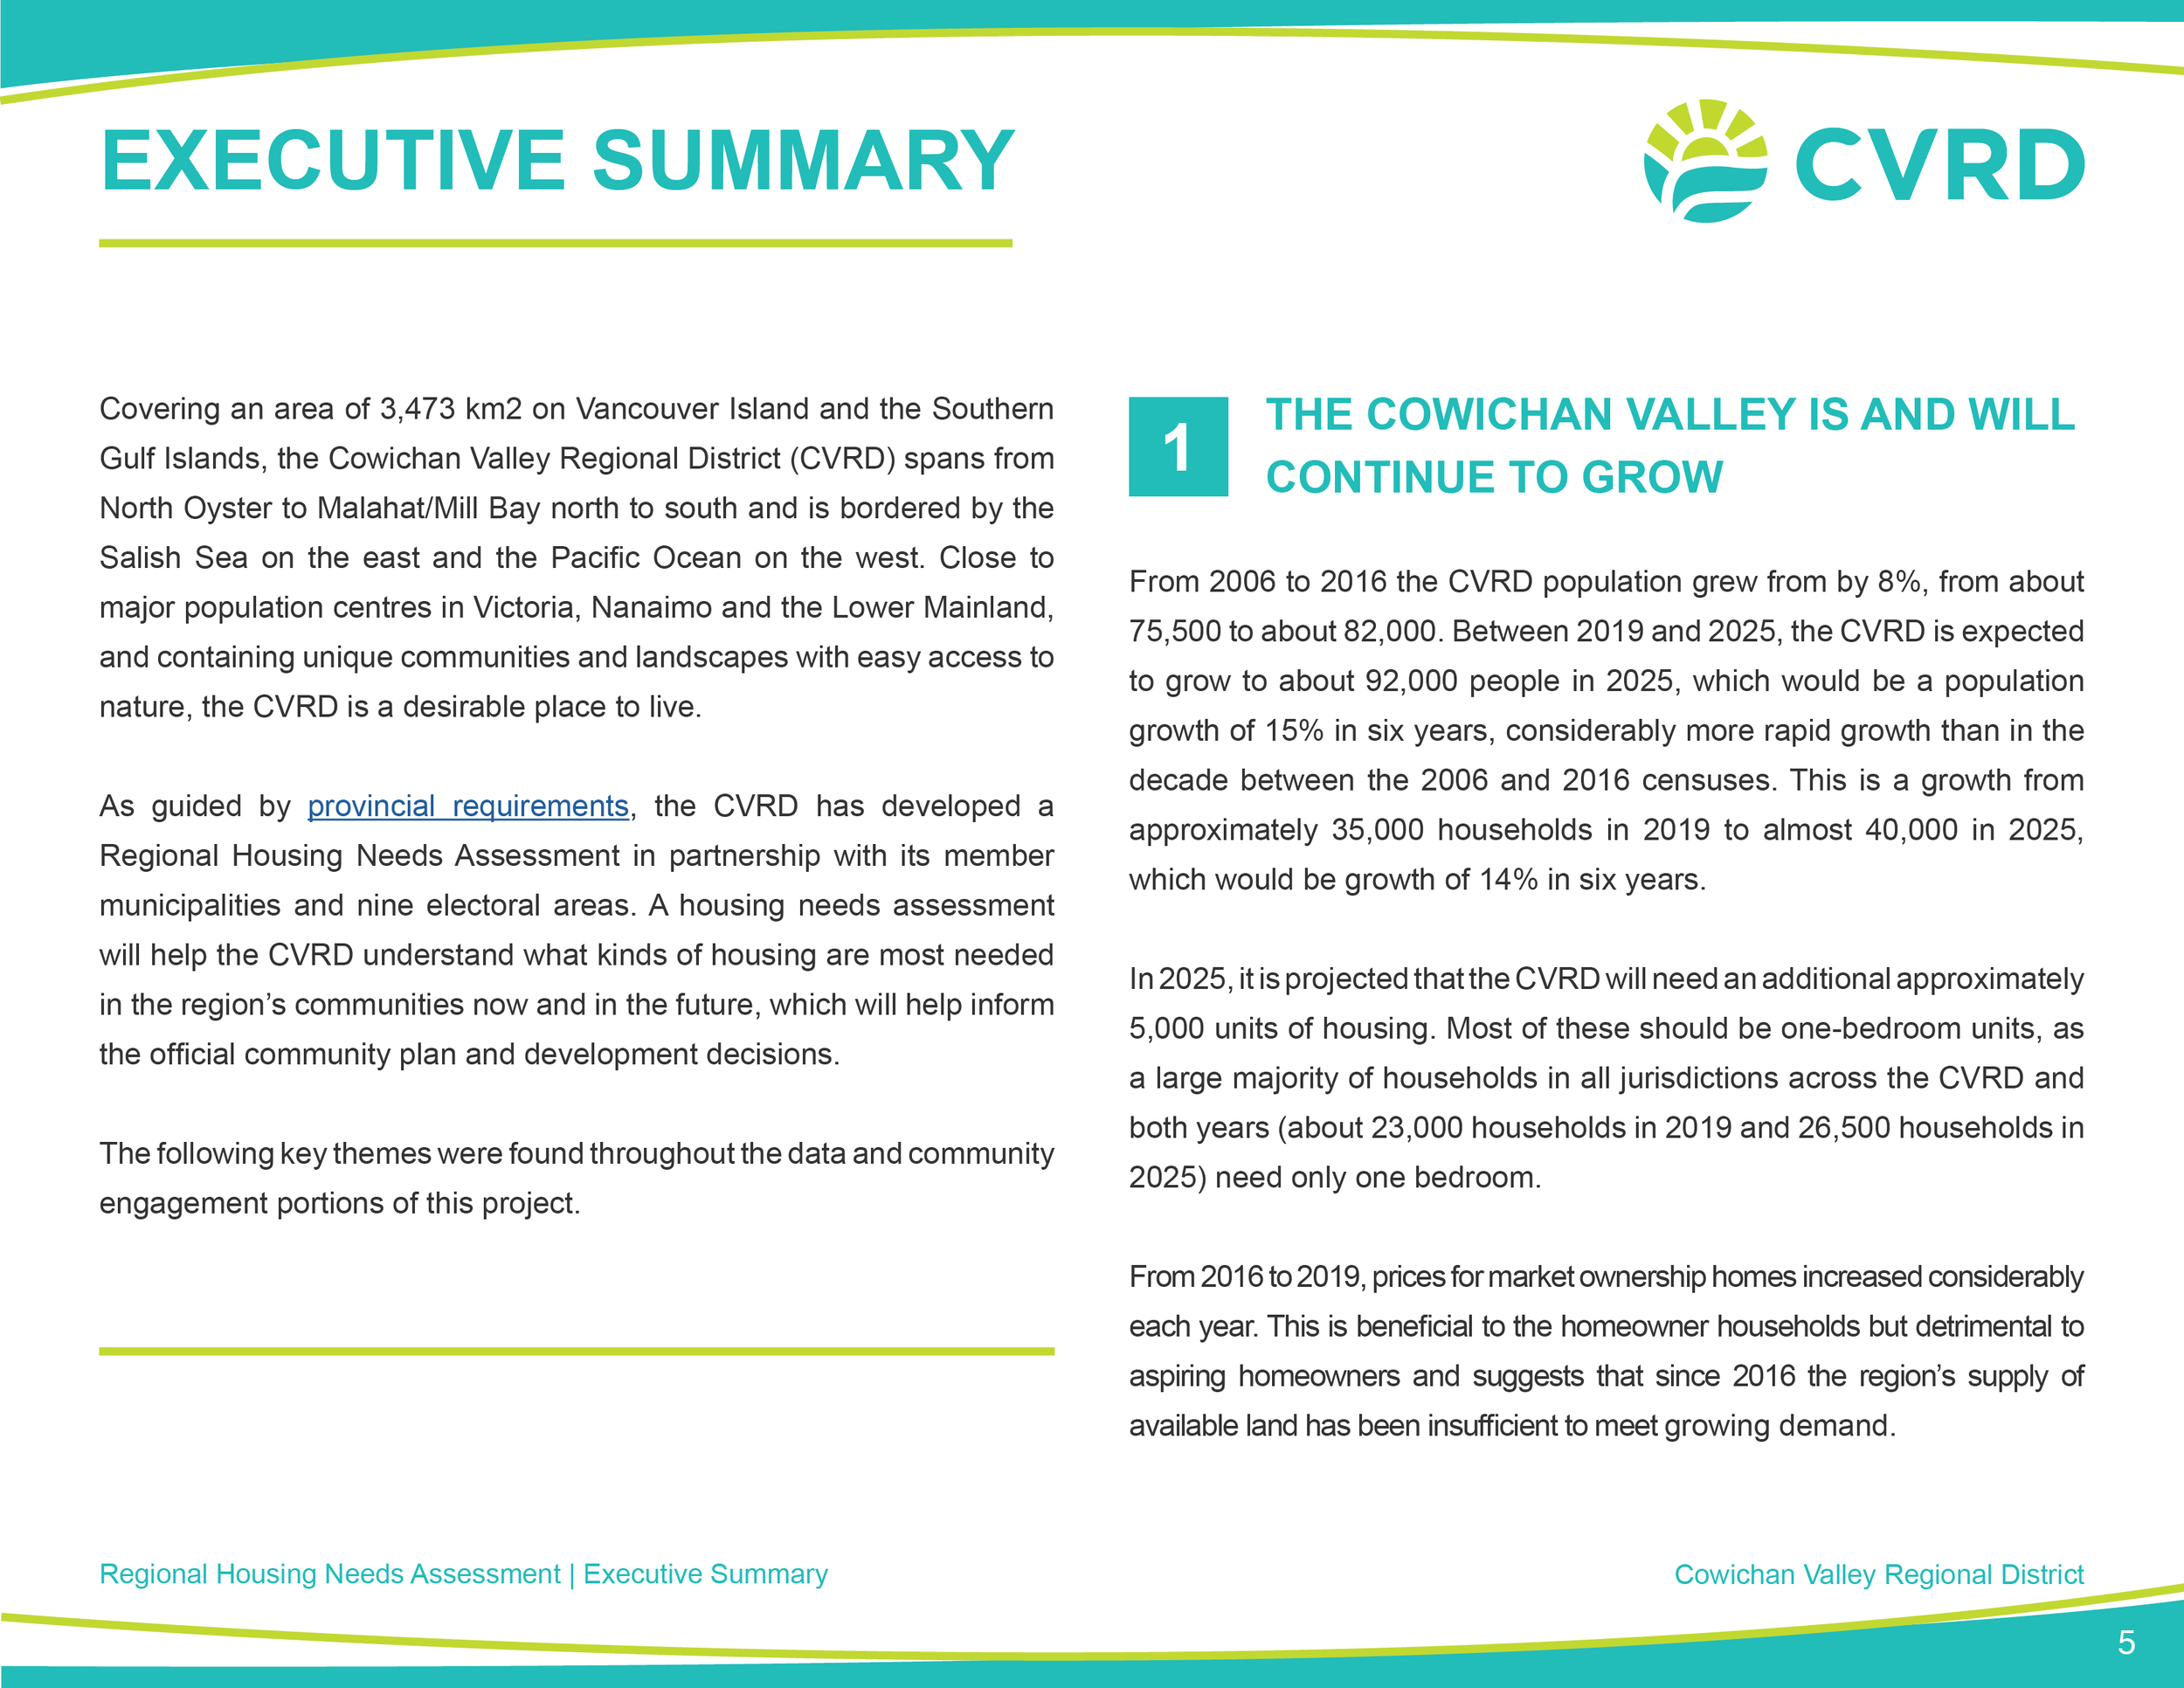 CVRD_Regional Report_V65.png